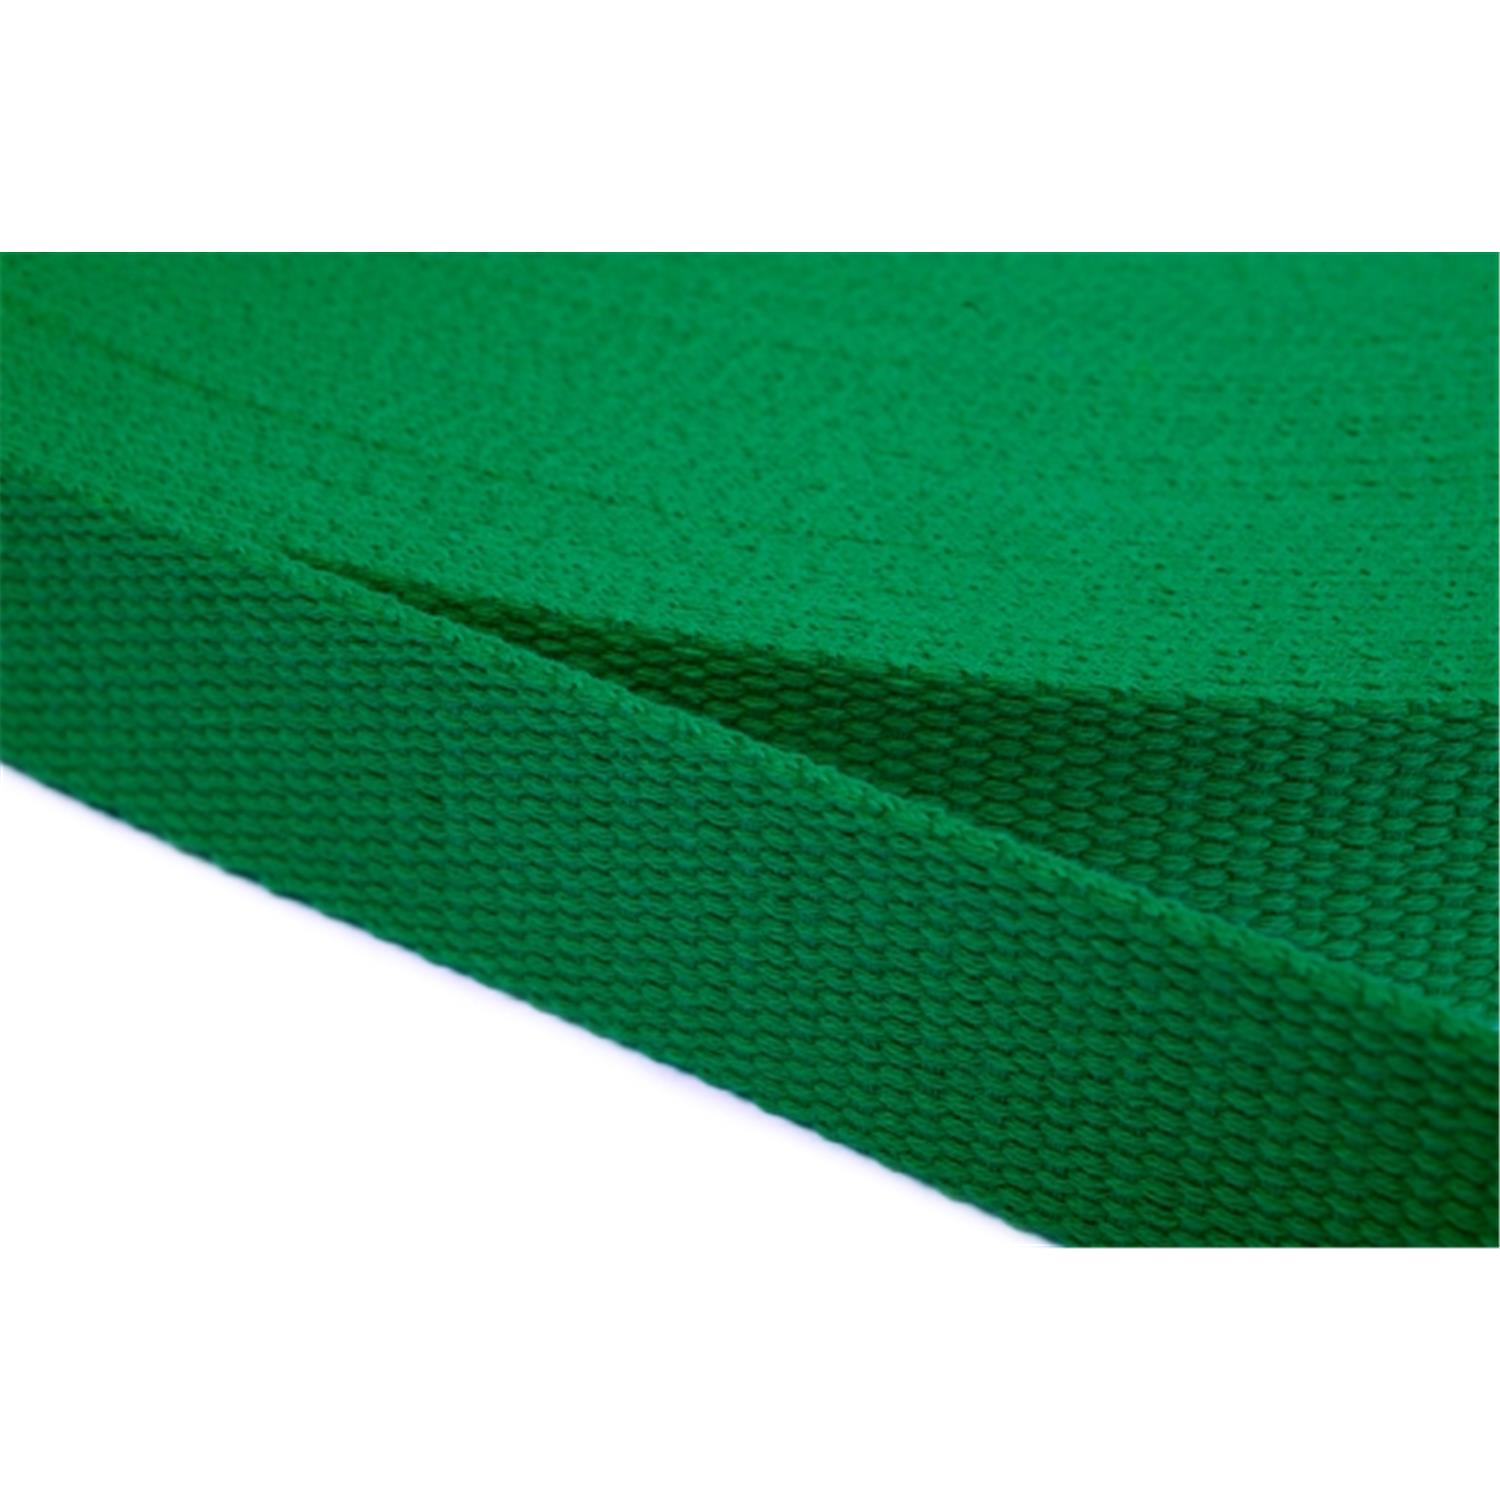 Gurtband aus Baumwolle 30mm in 20 Farben 16 - grün 6 Meter